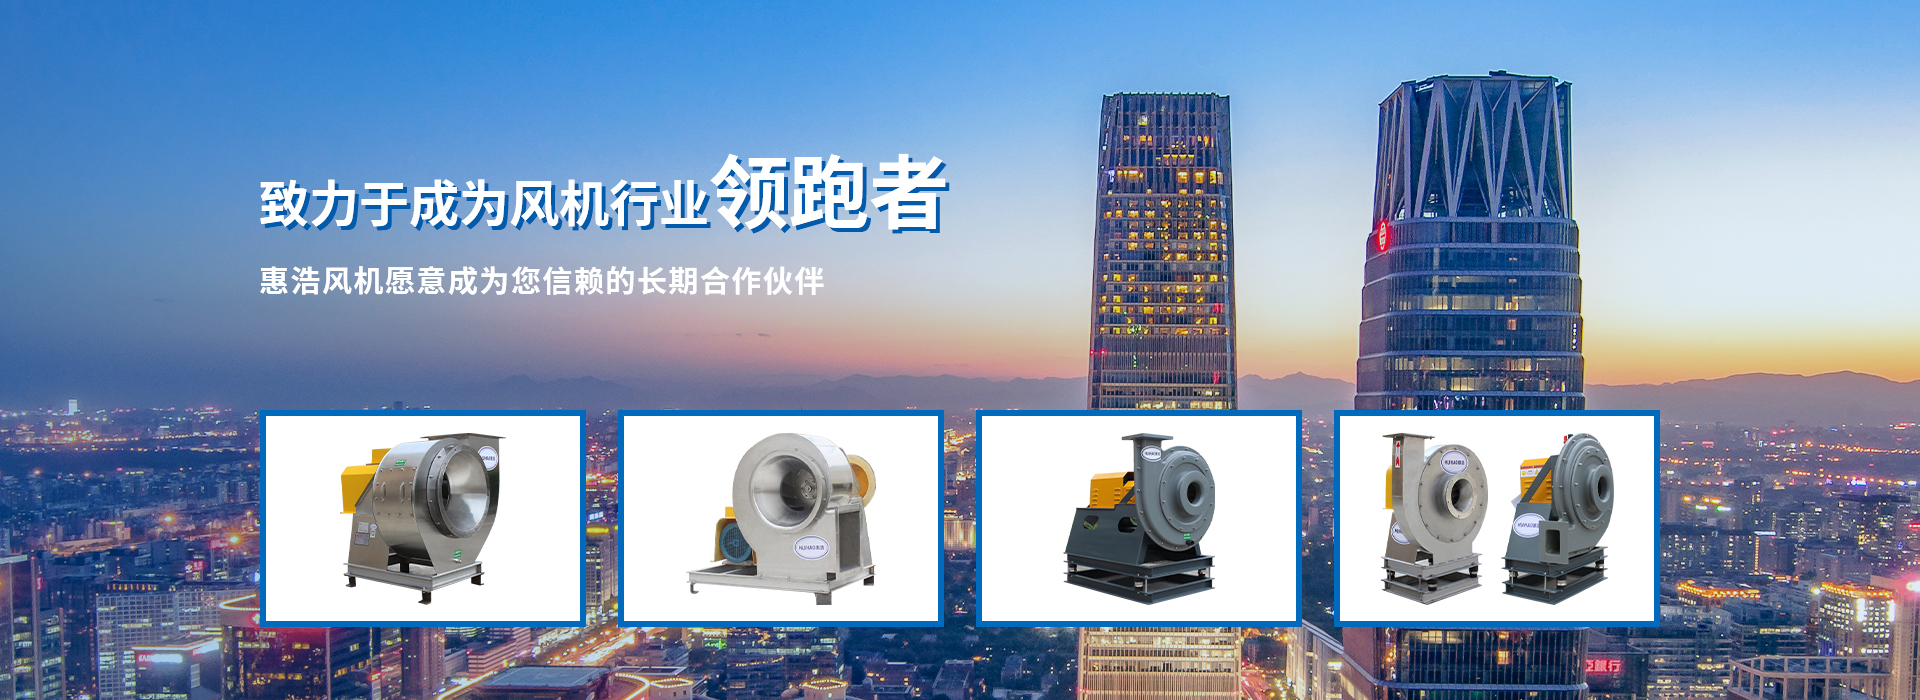 风机产品-浙江惠浩环境科技有限公司